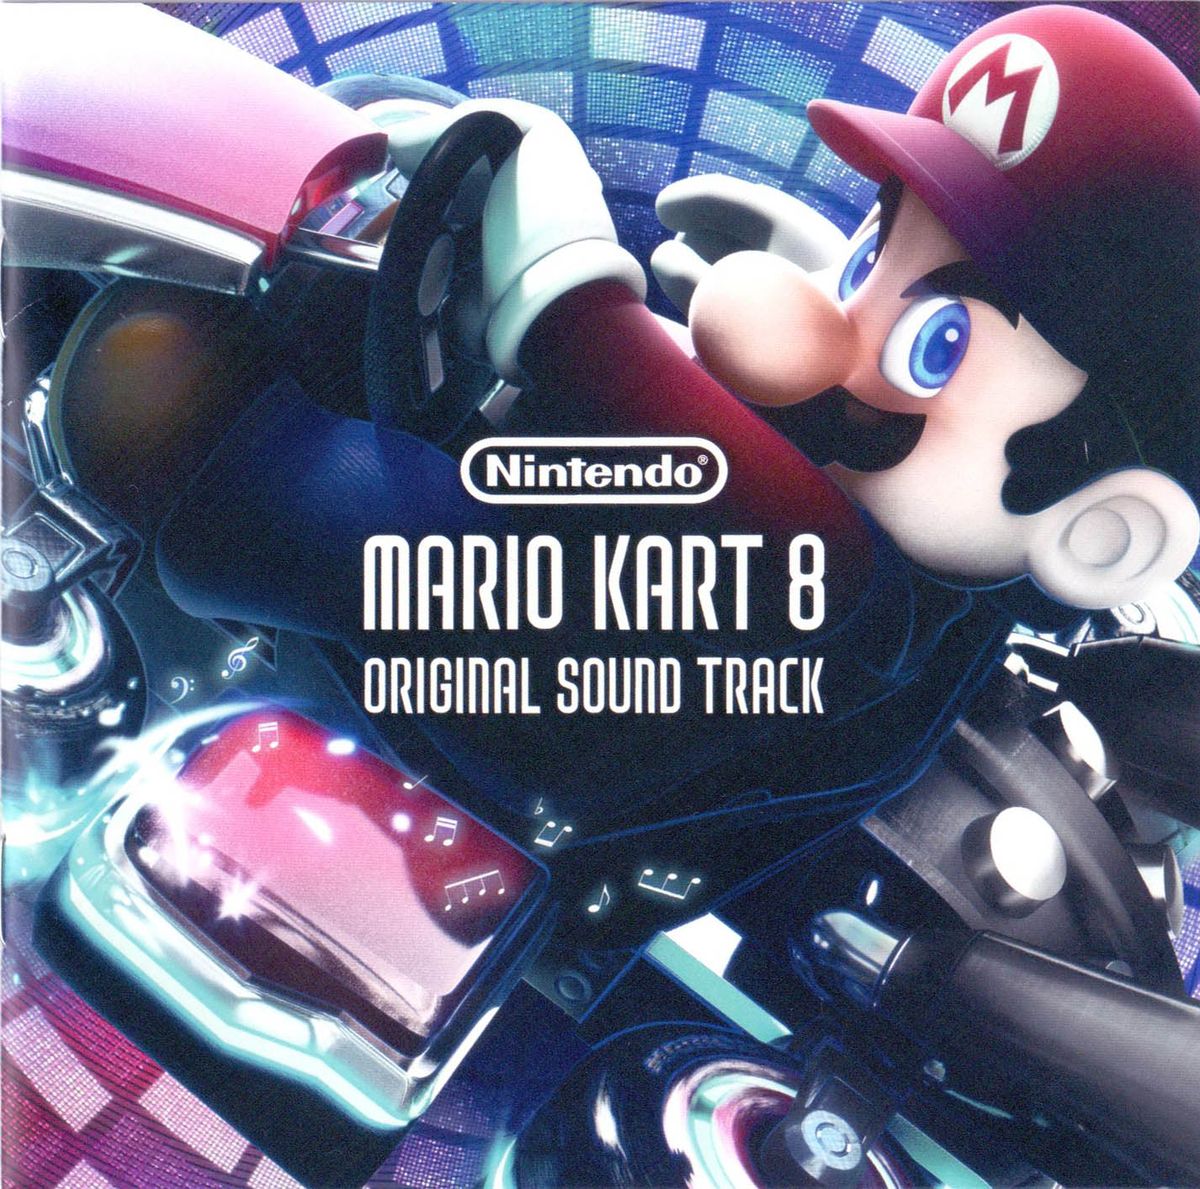 Mario Kart 8 Deluxe - Final Race + True Ending & Credits 